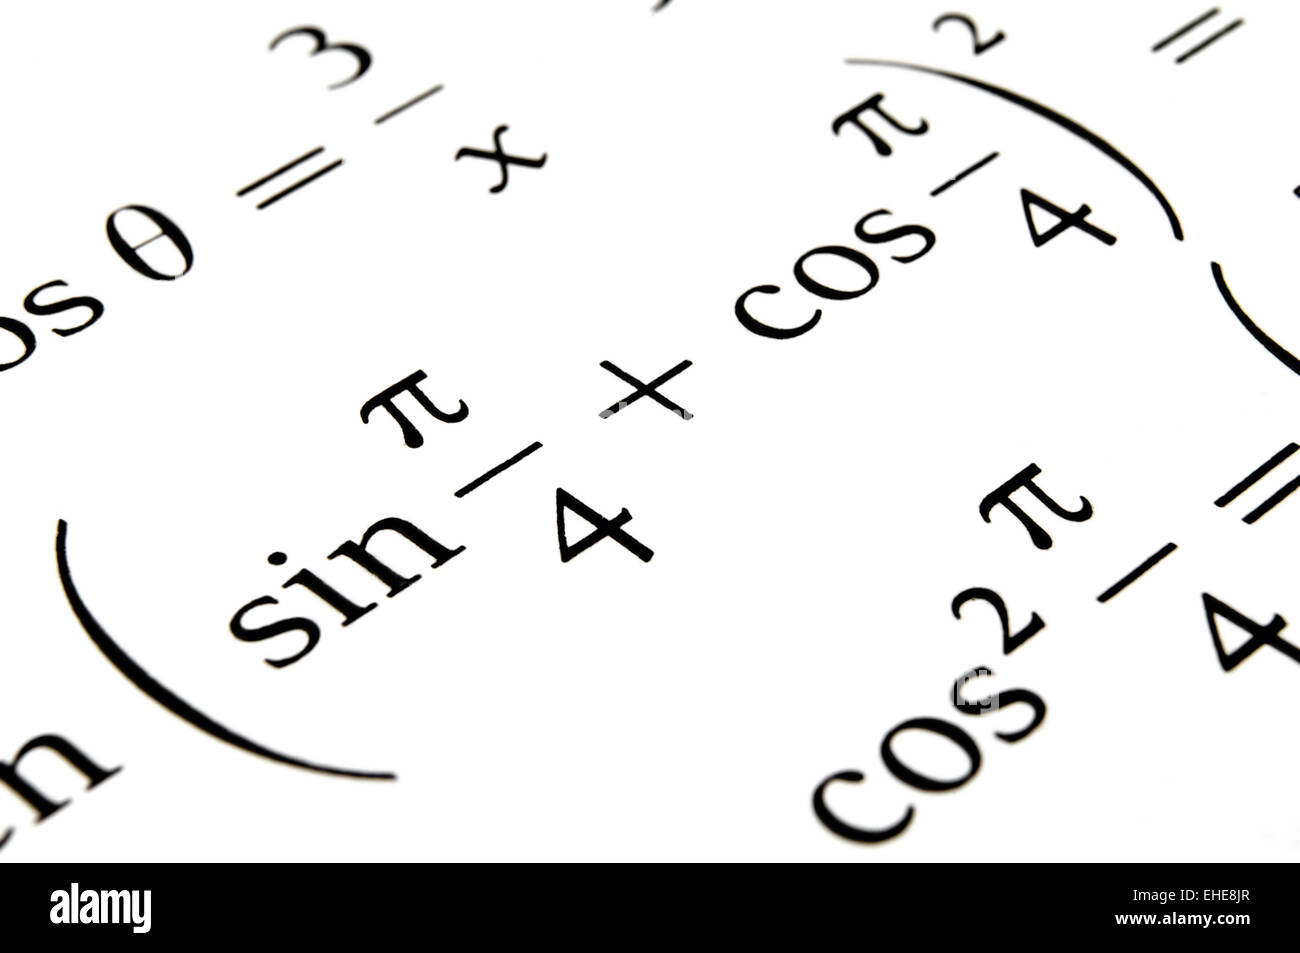 Algebra formulas close up. Stock Photo